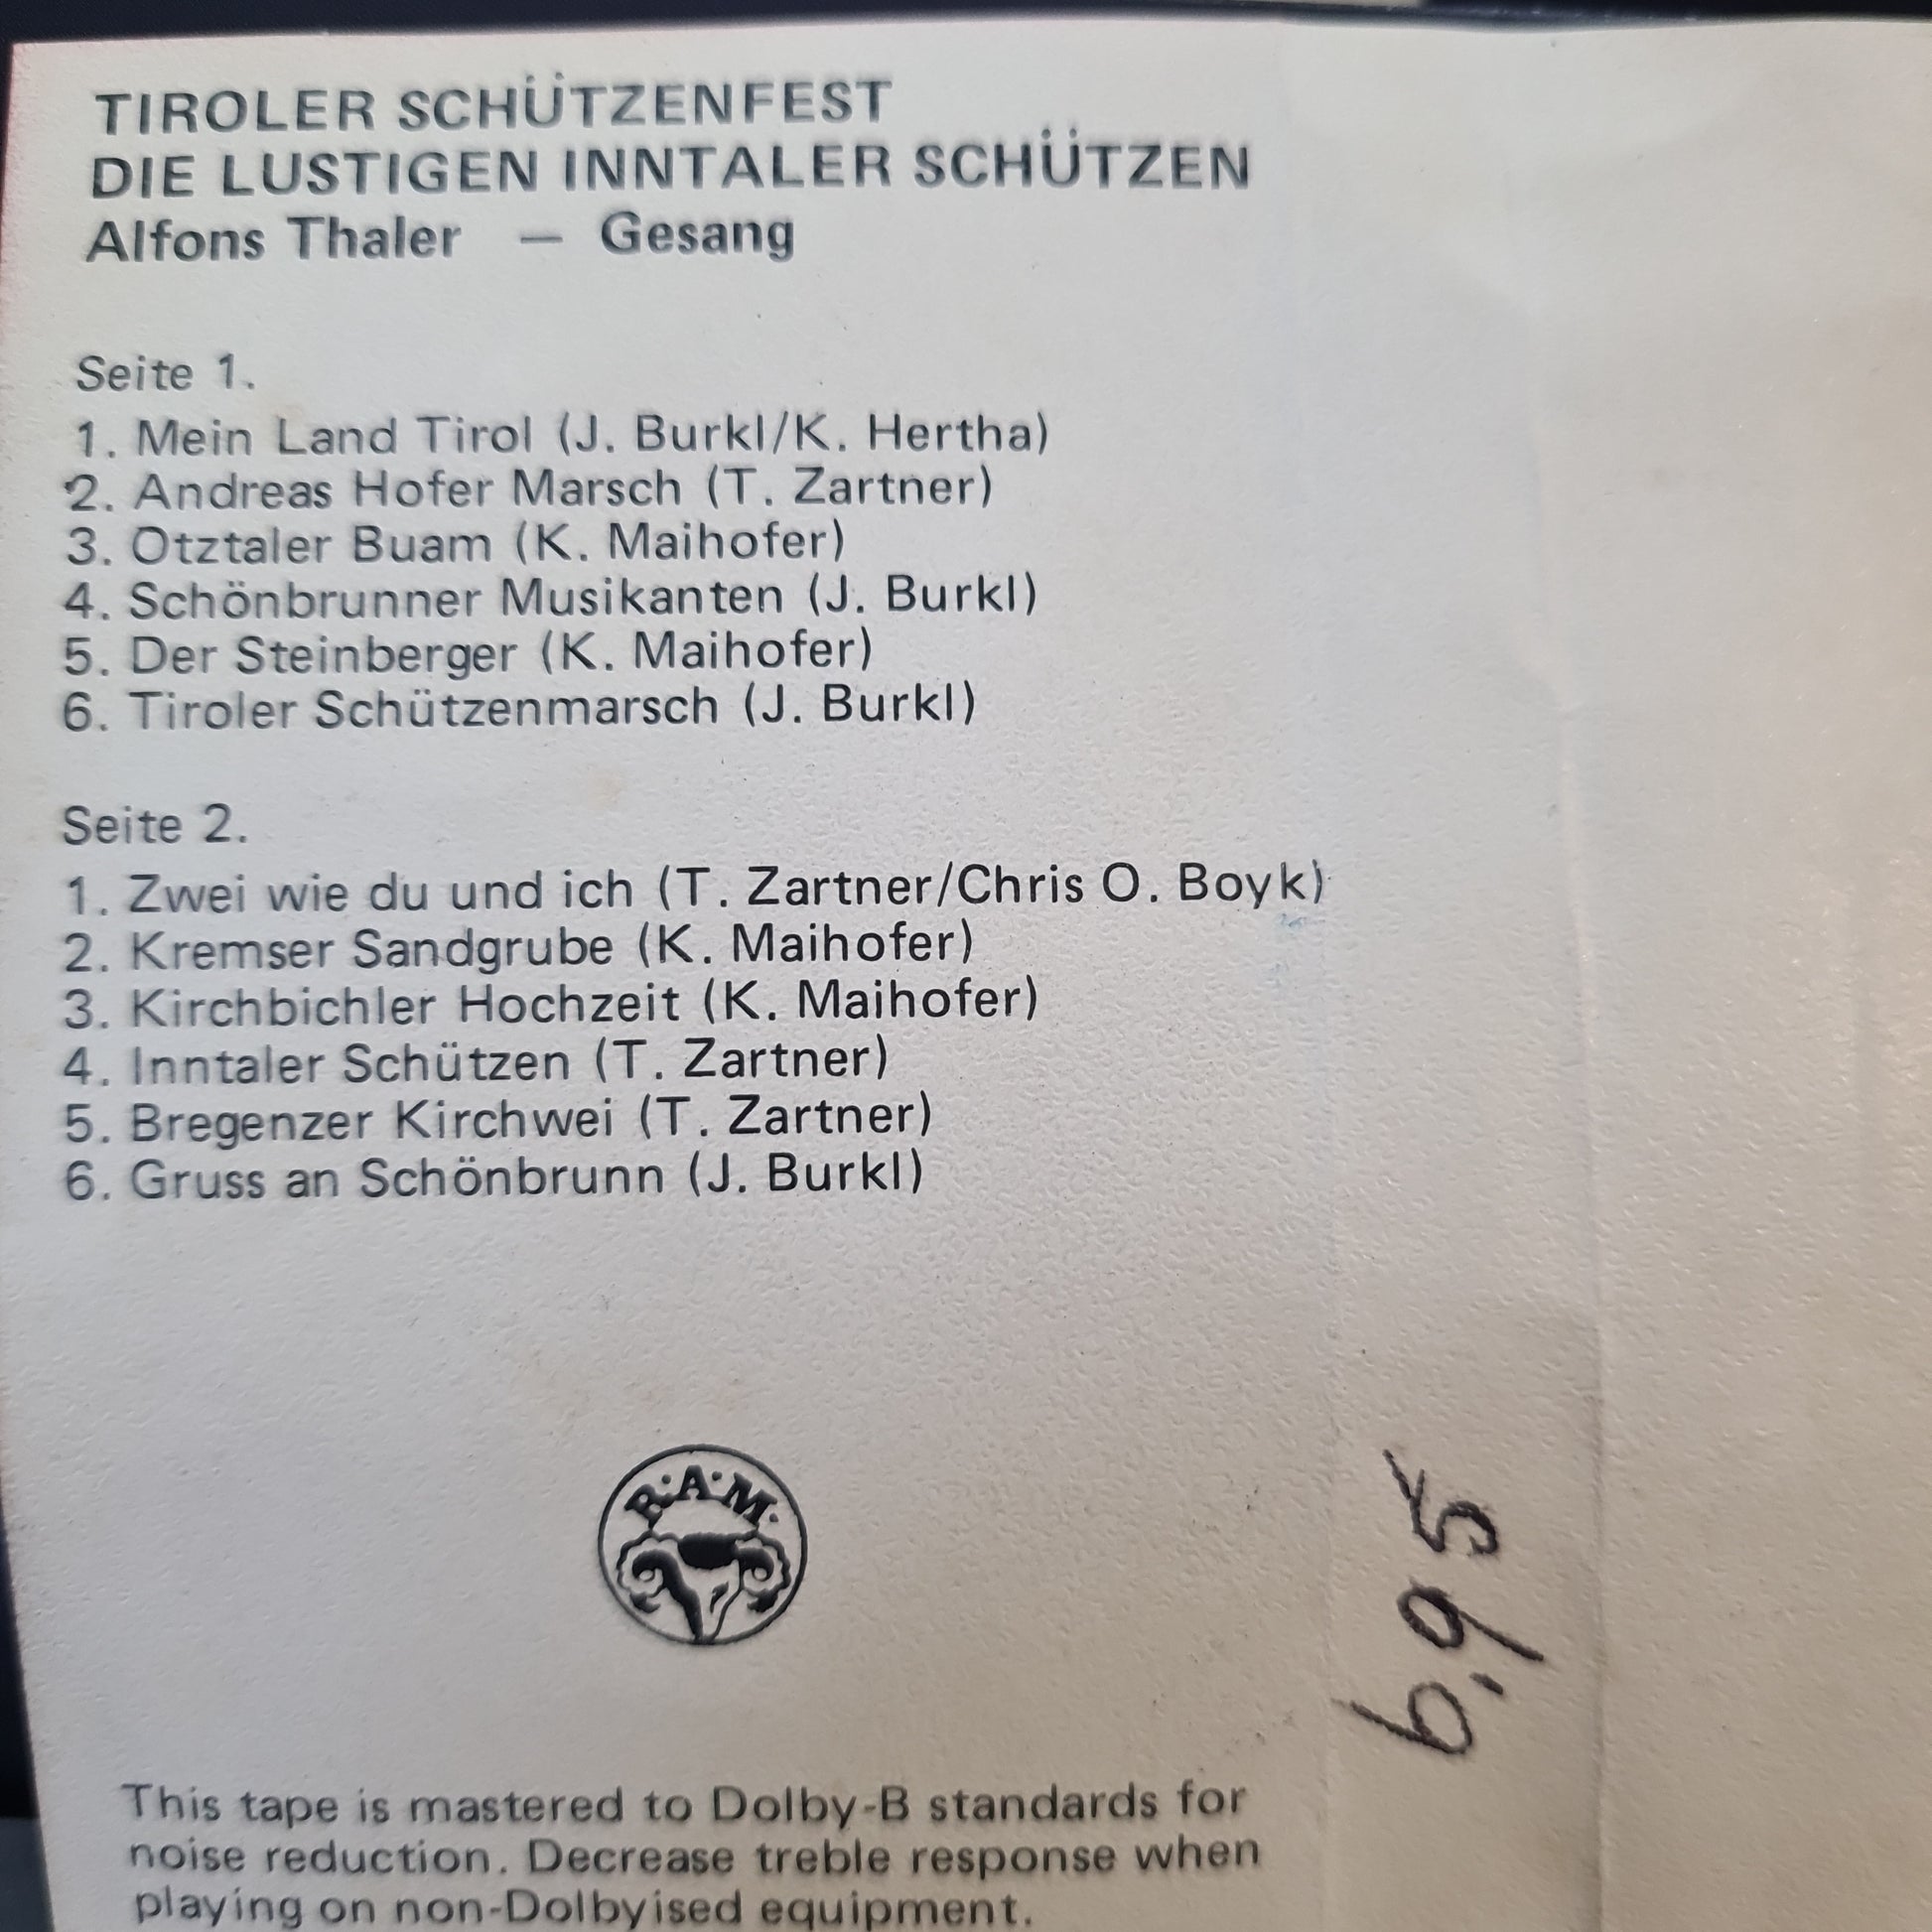 Lustigen Inntaler Schutzen - Tiroler Schutzenfest (Cassette) Cassettebandjes VINYLSINGLES.NL